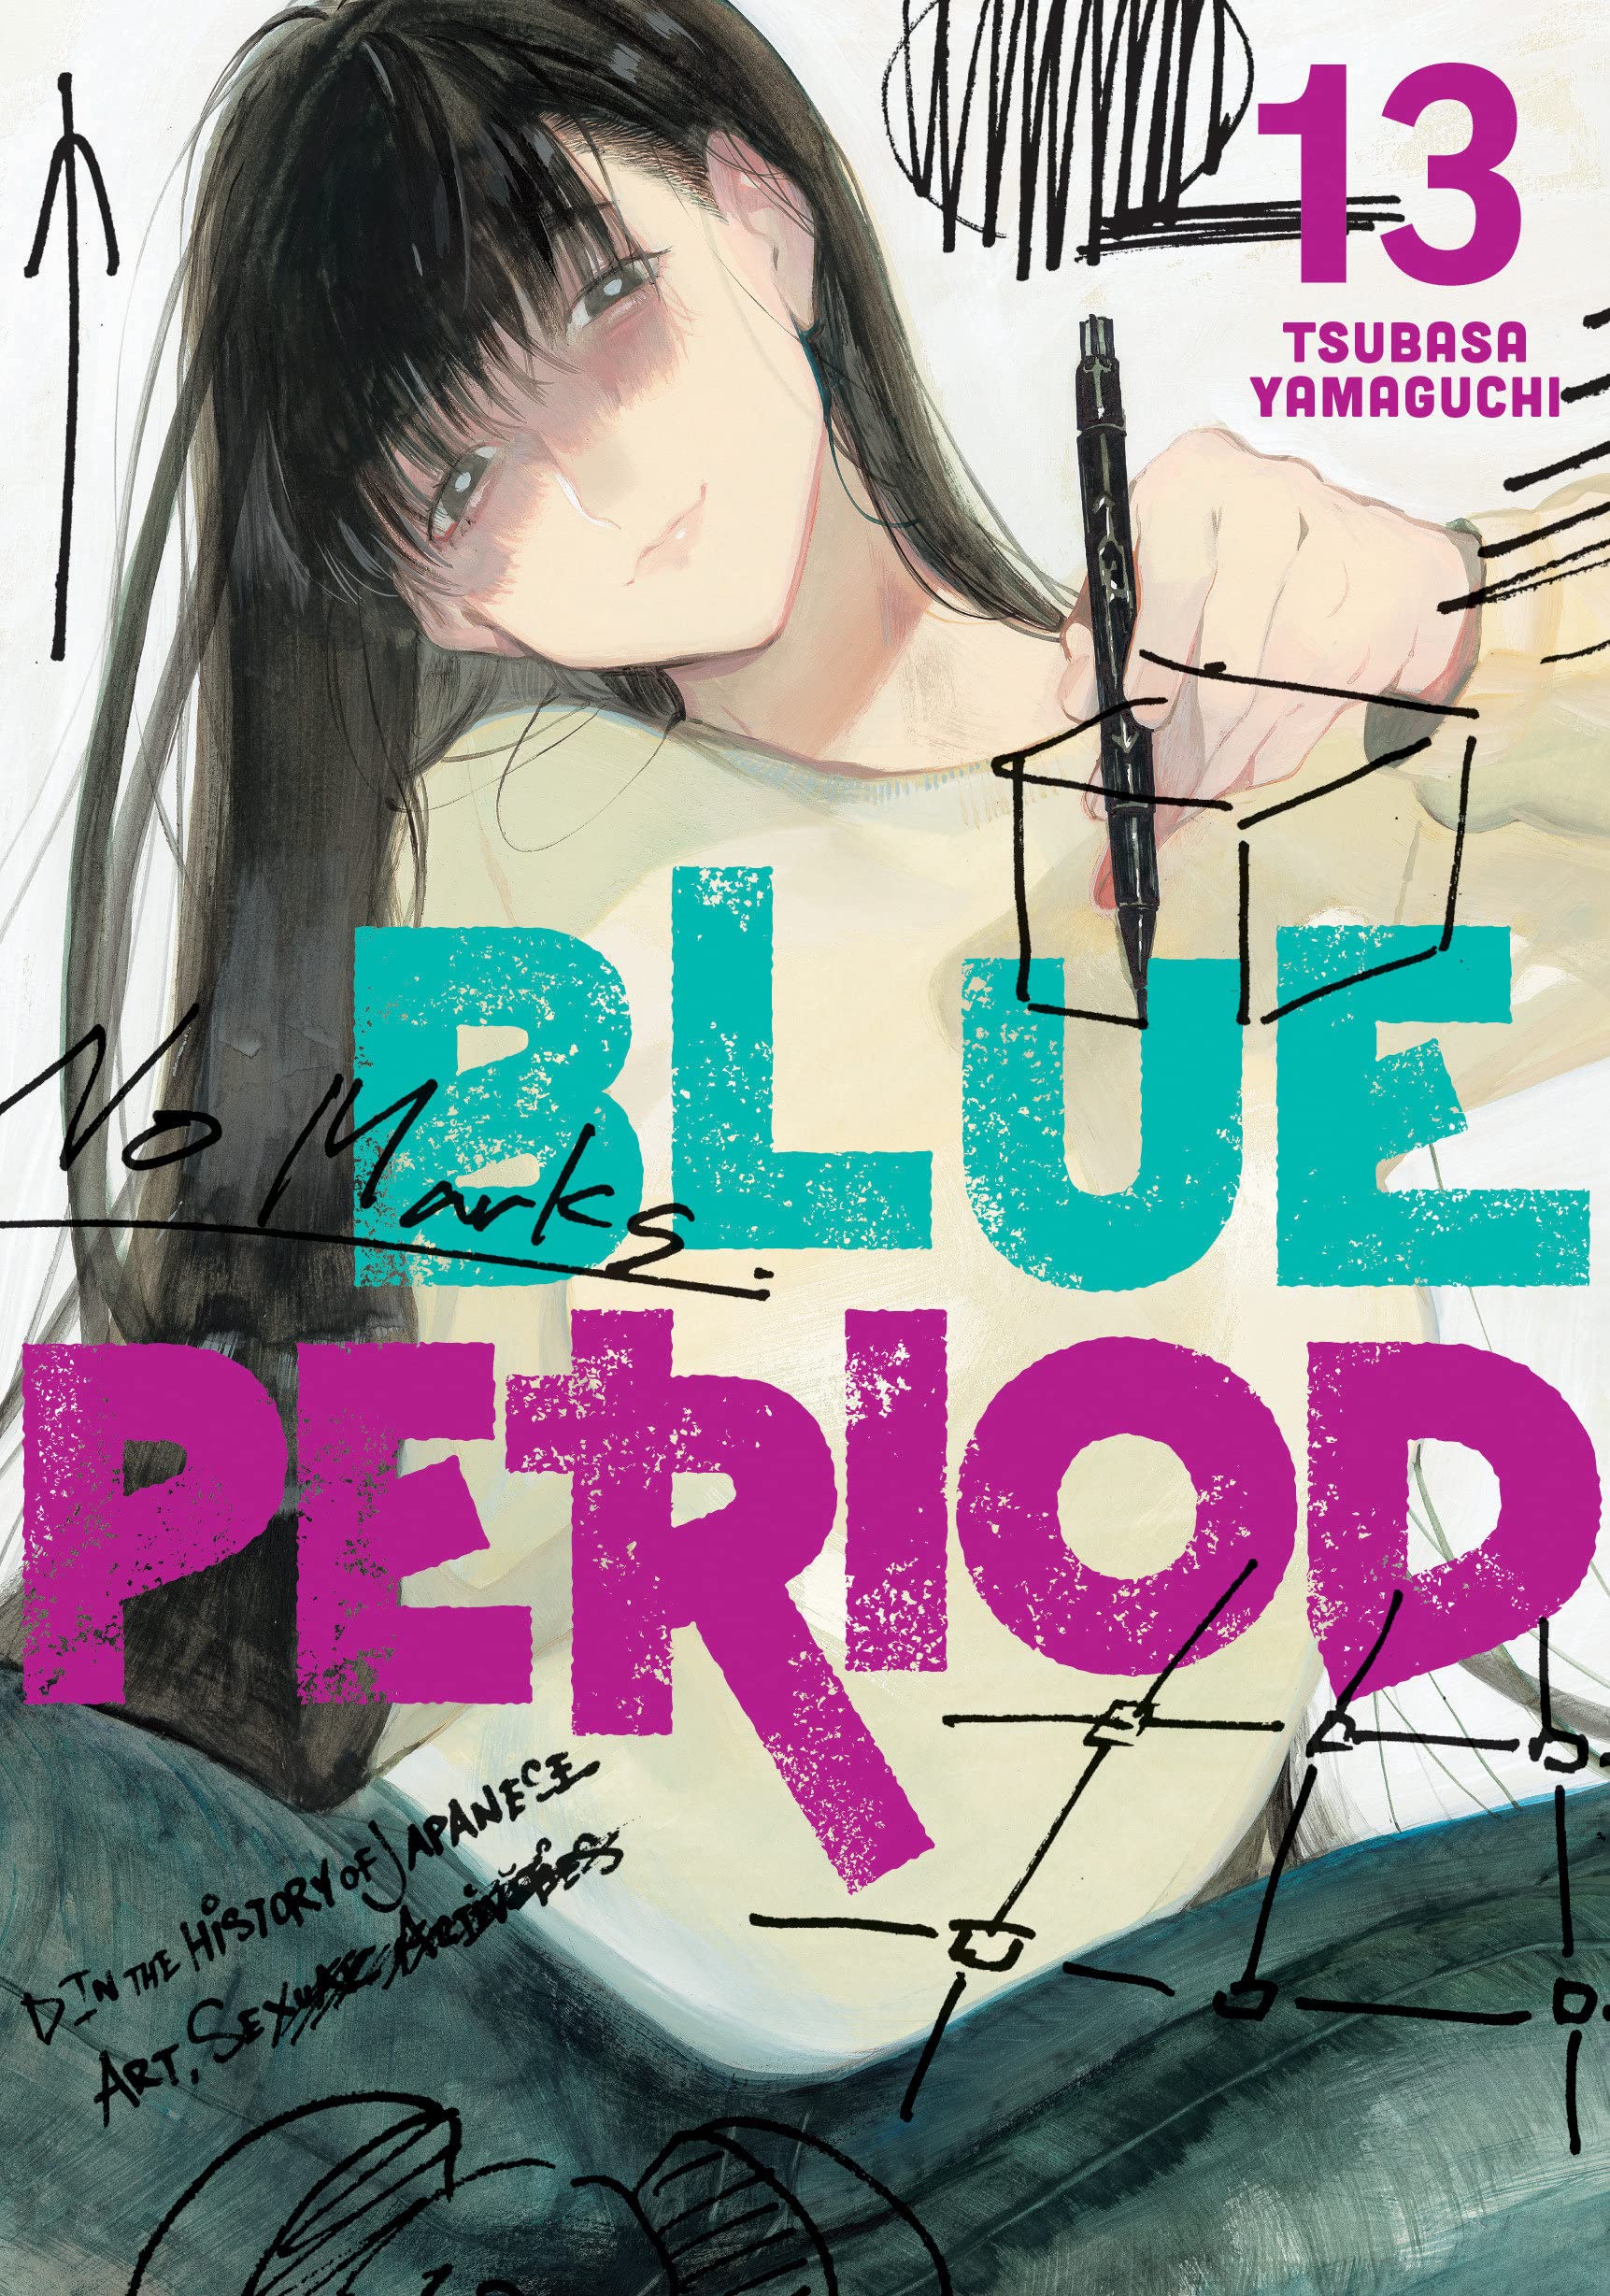 Blue Period - Volume 13 | Tsubasa Yamaguchi